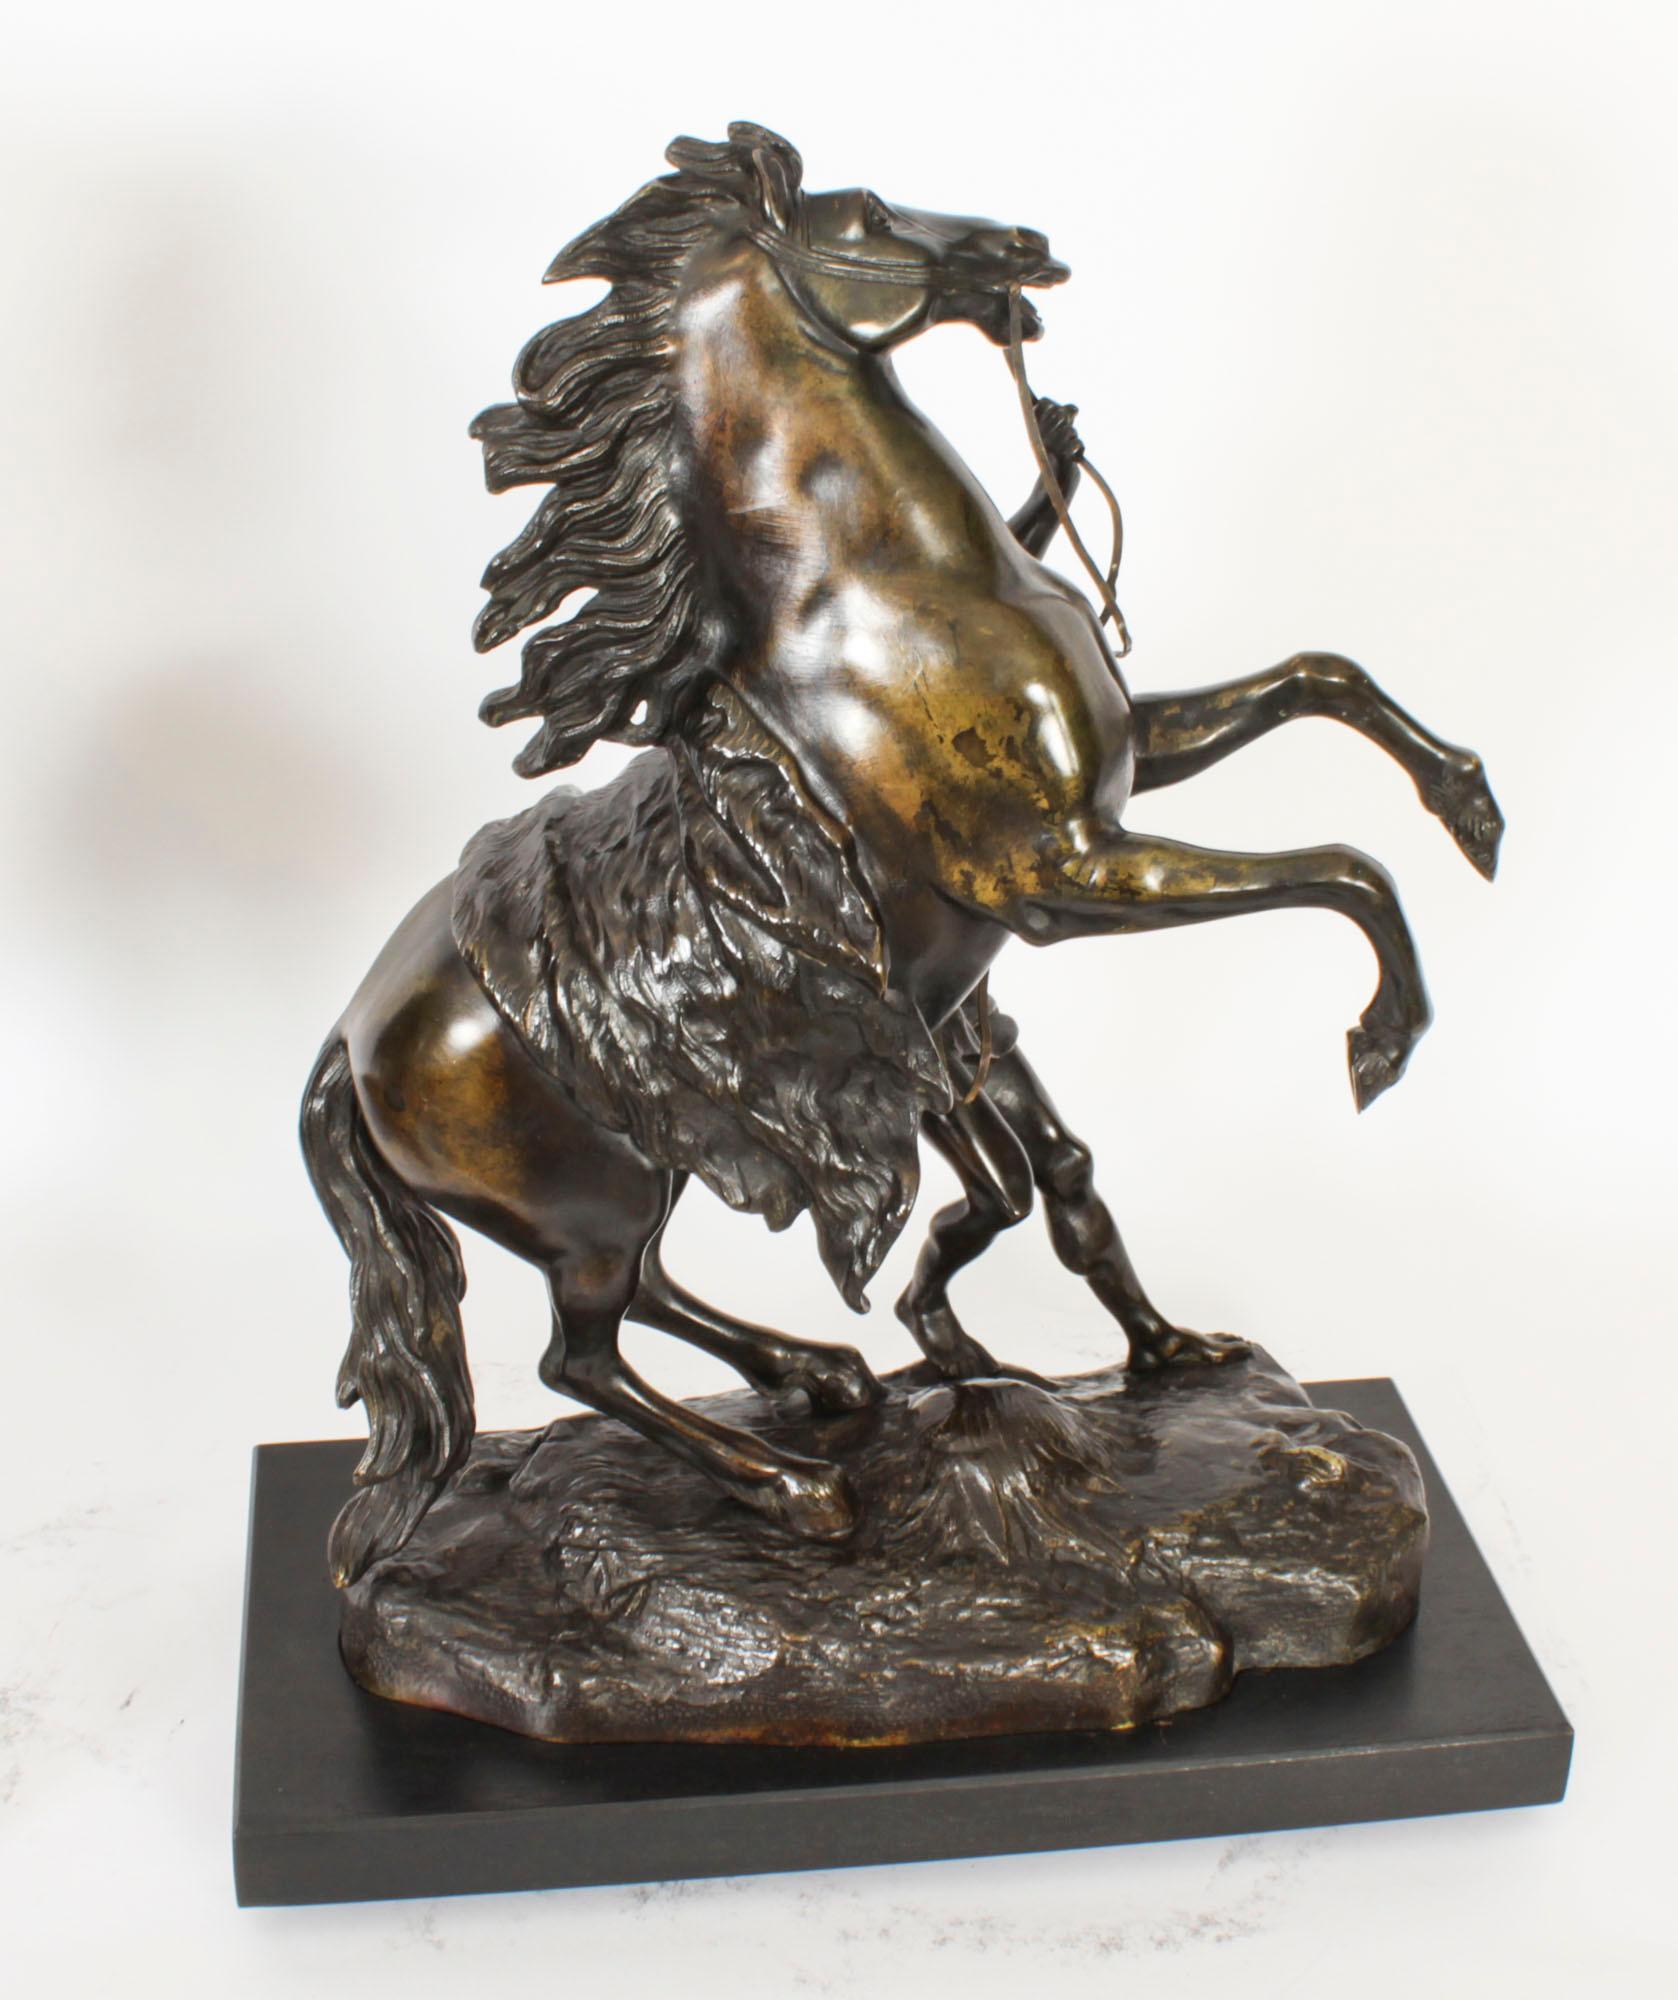 Dies ist eine feine antike Paar Französisch Grand Tour patiniert-Bronze-Skulpturen der Marly Pferde, CIRCA 1850 in Datum und signiert, um eine Basis.
 
Die originalen Marly-Pferde wurden von Ludwig XV. von Frankreich in Auftrag gegeben, aus